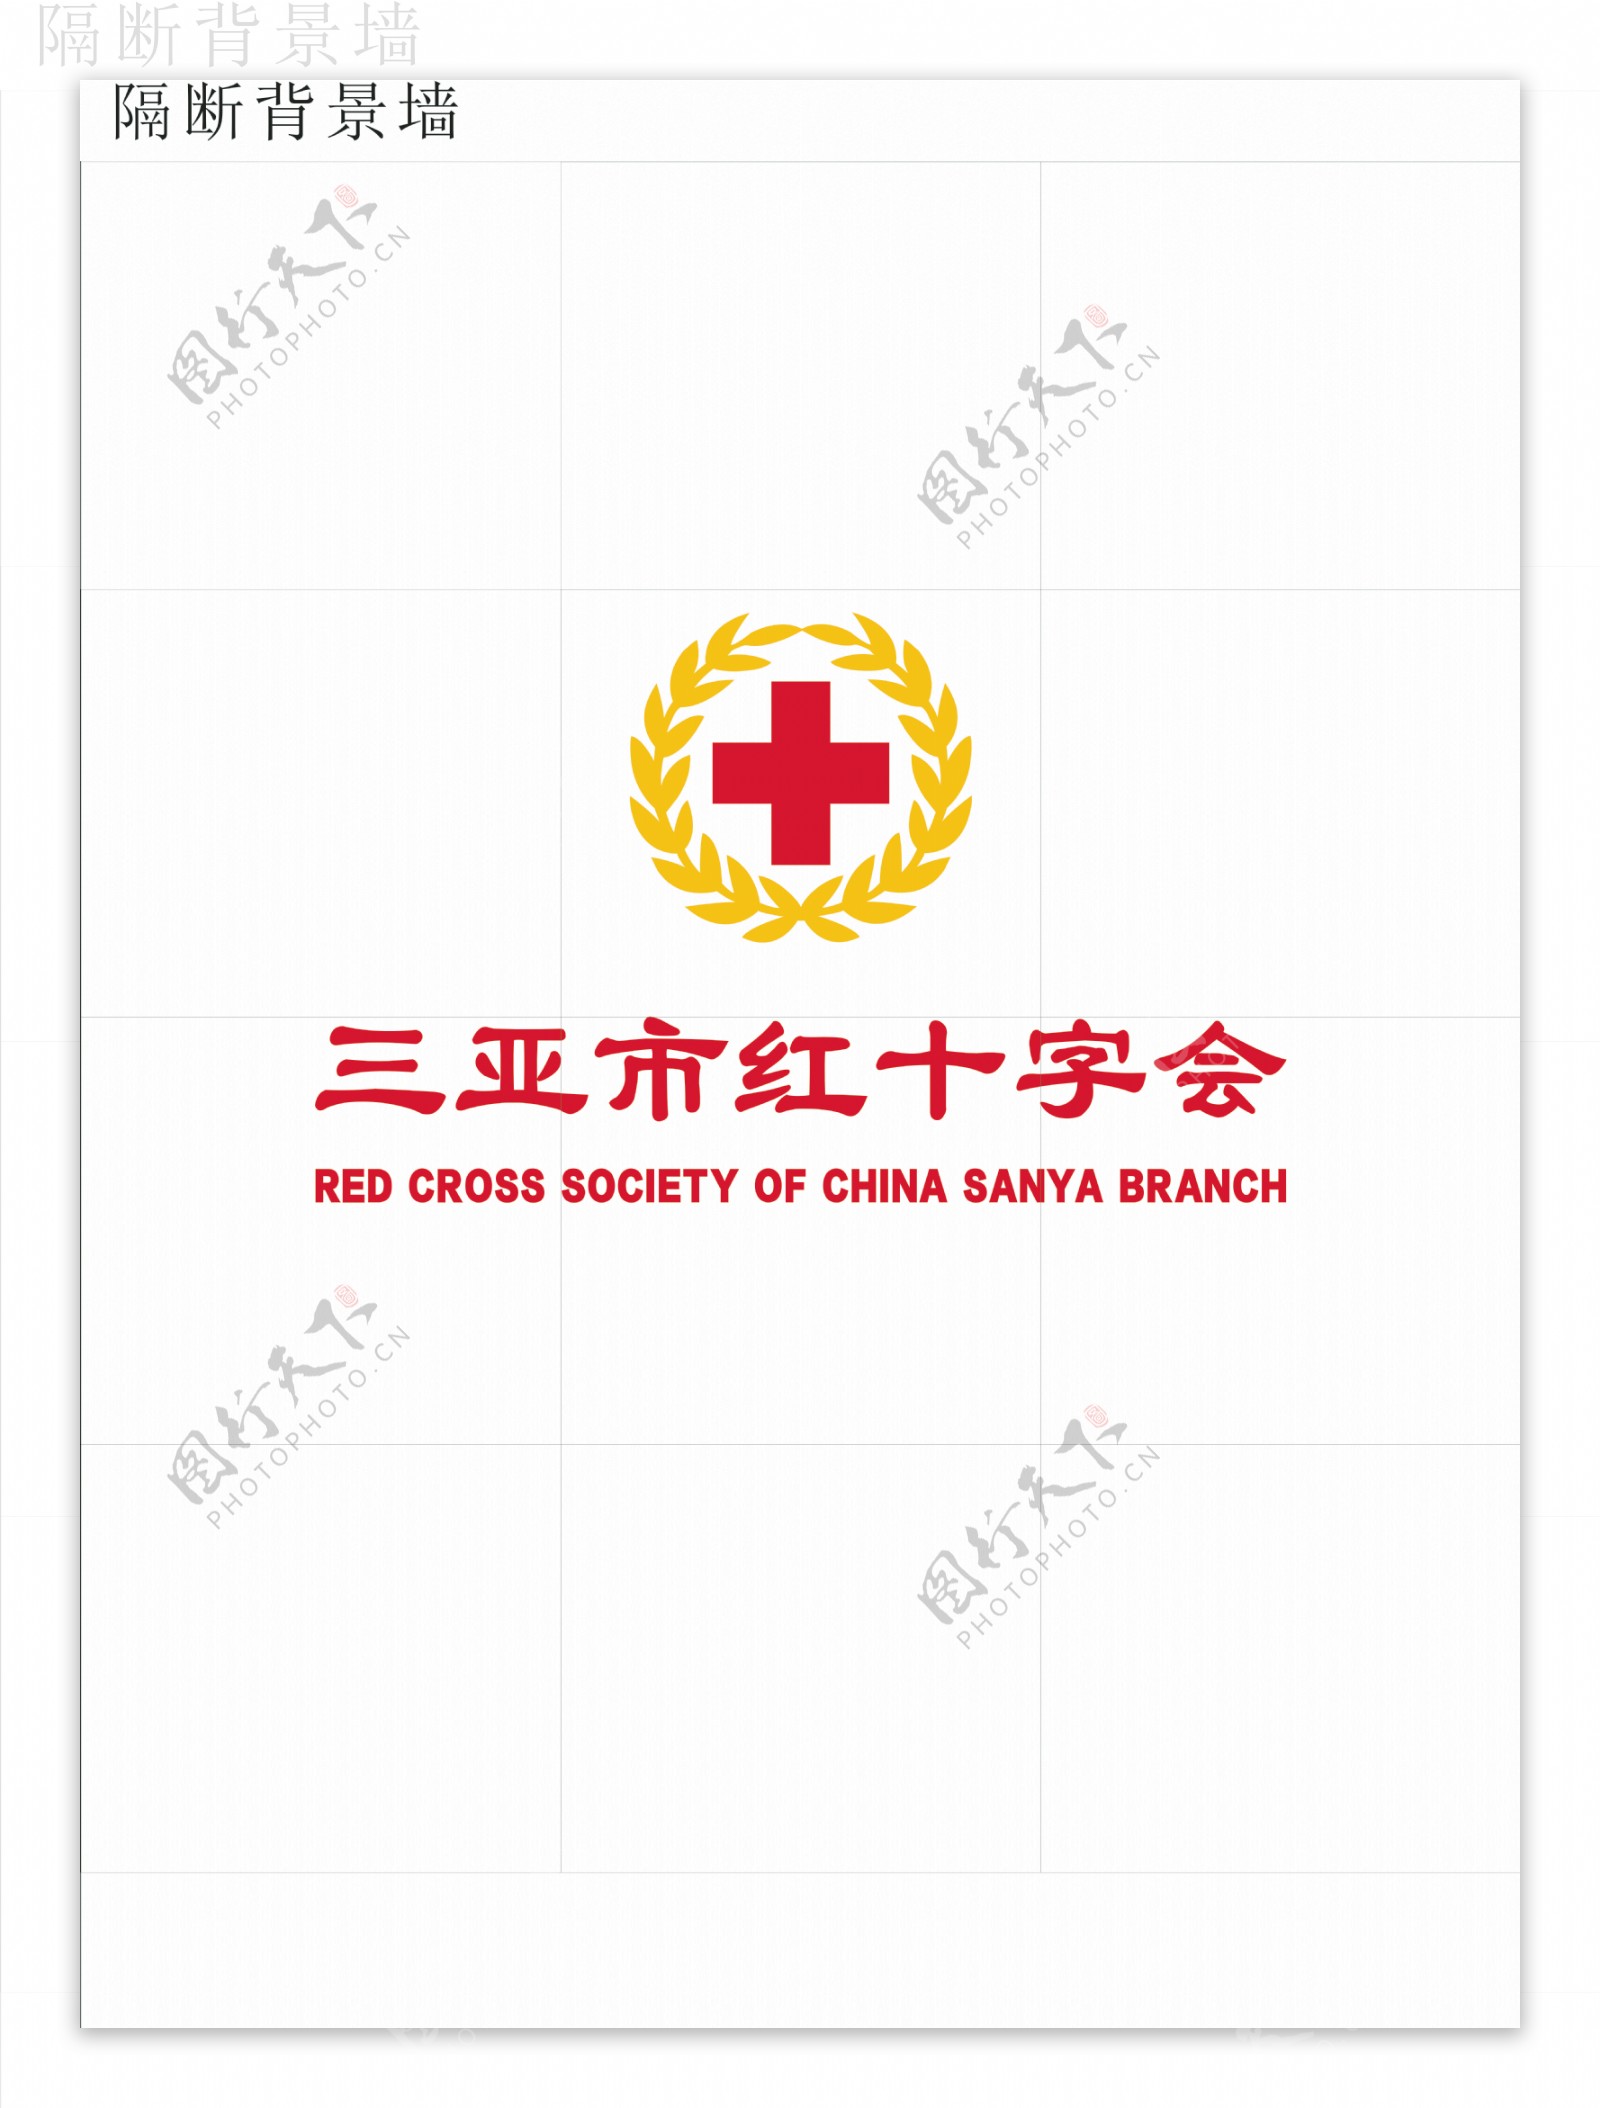 红十字会logo